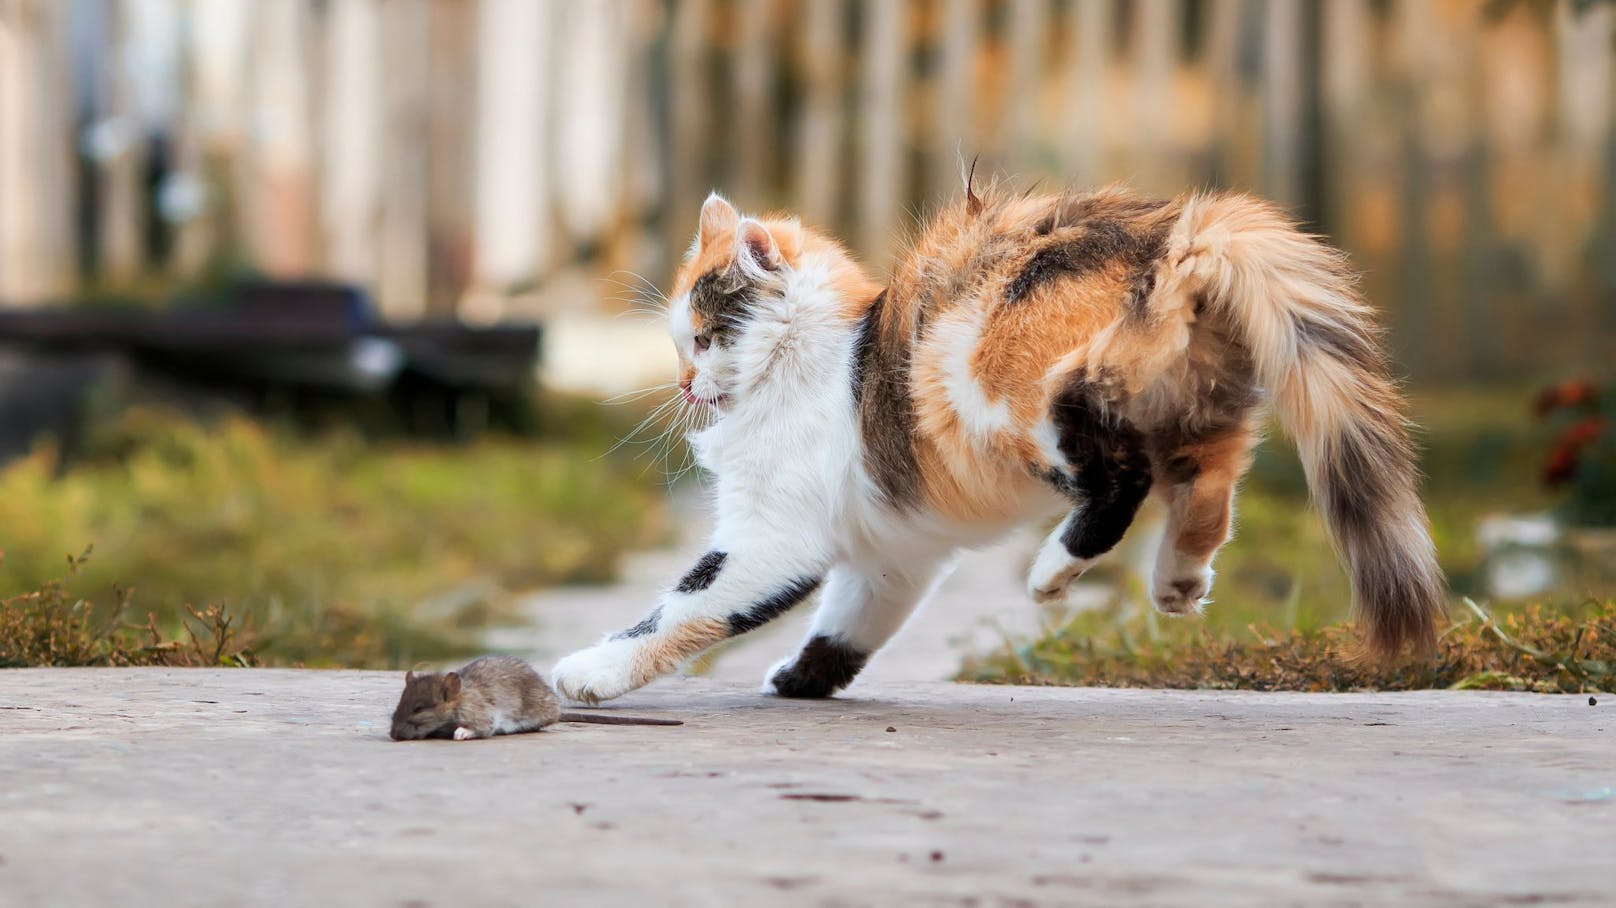 Tja, "Tom & Jerry" gibt es wirklich und die Katze folgt ihrem Jagdtrieb. 